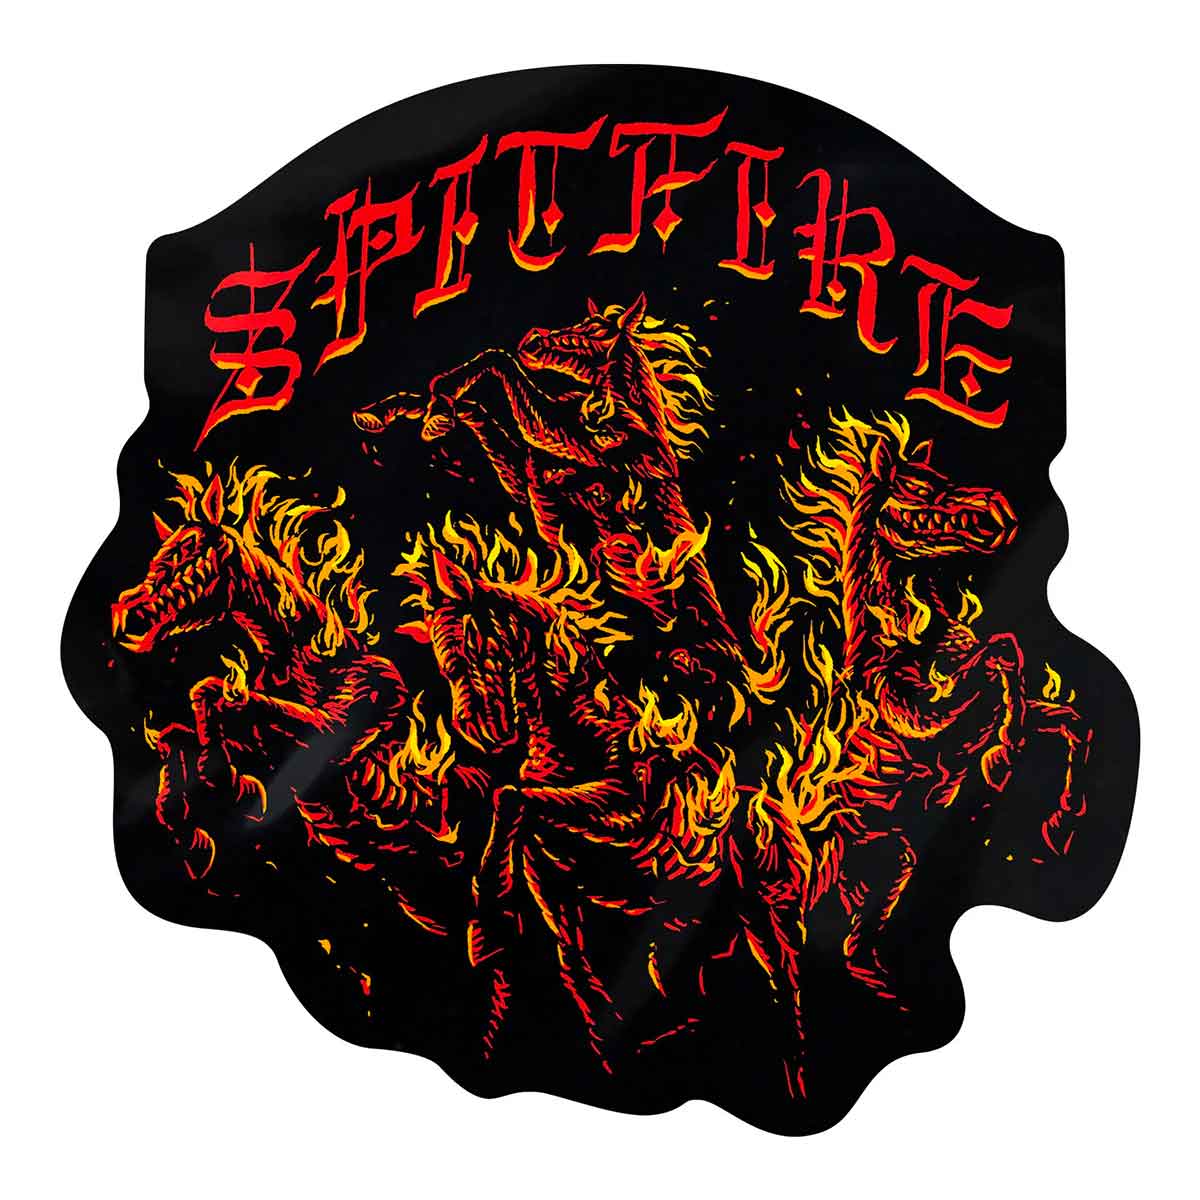 Spitfire Wheels Apocalypse Sticker - 4.75"